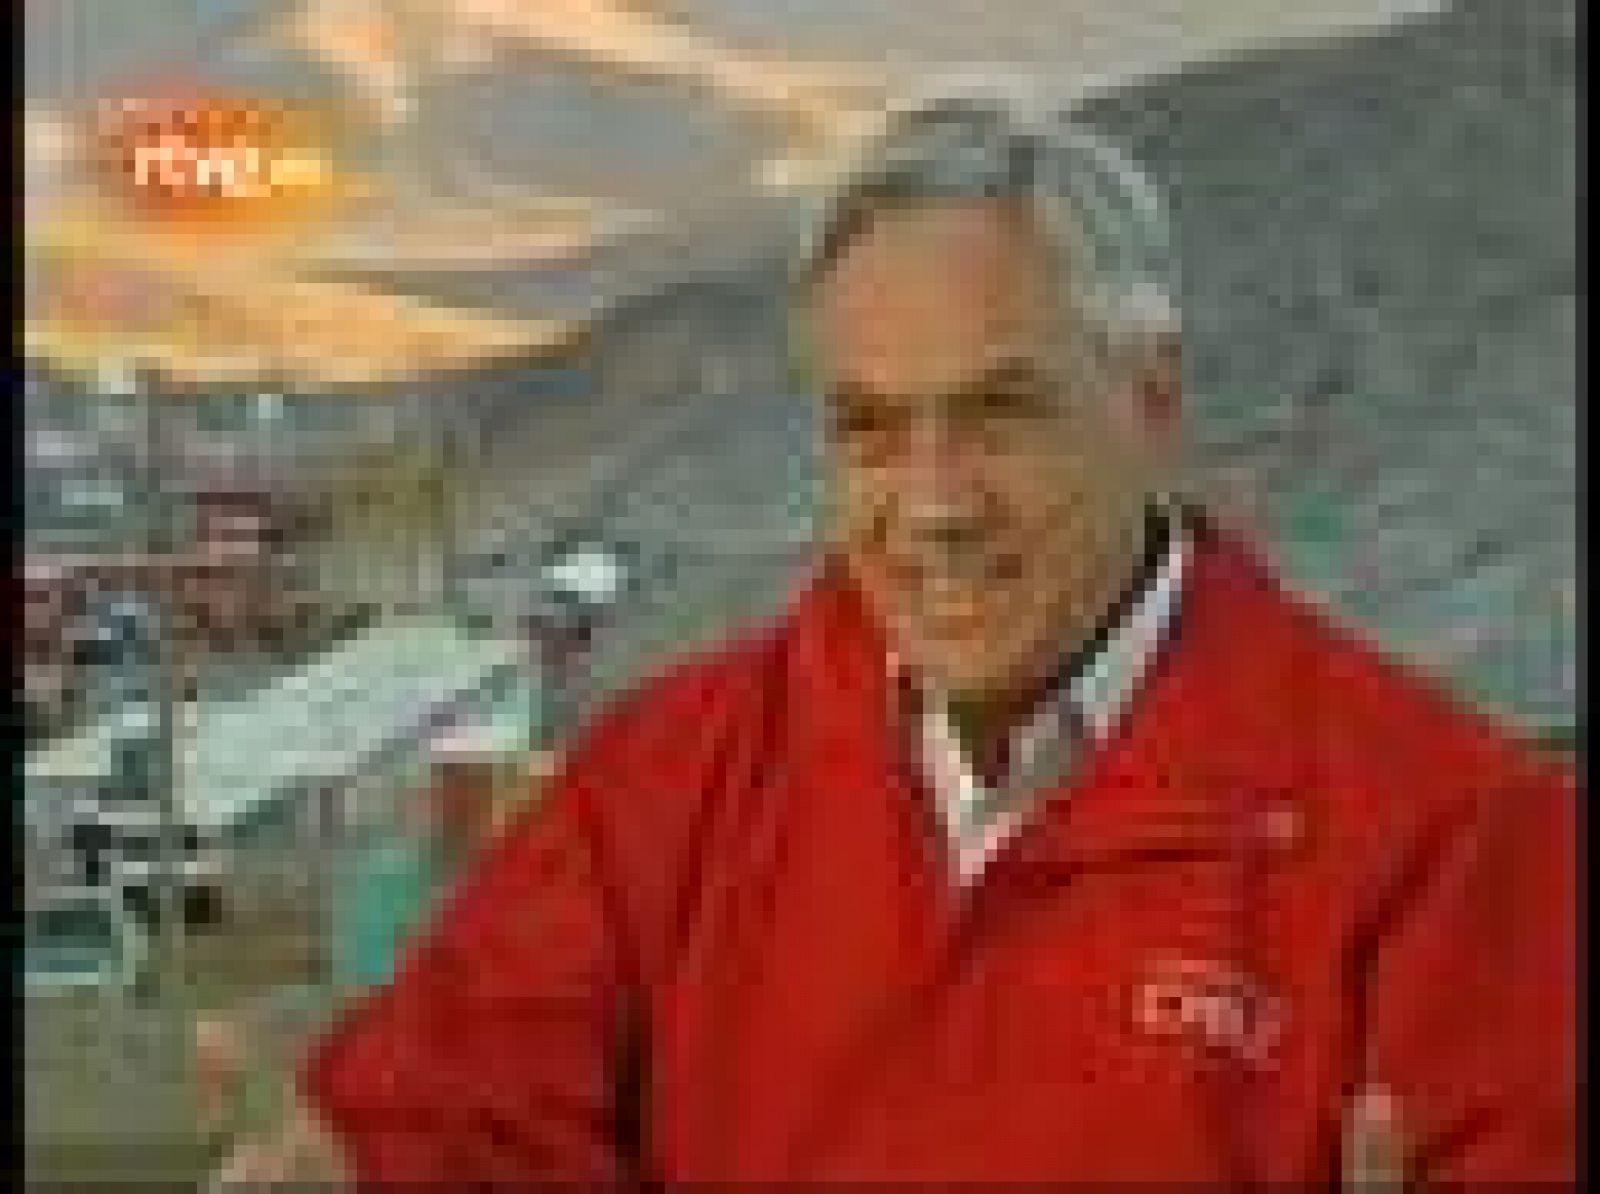 El presidente chileno, Sebastián Piñera, ha concedido una entrevista exclusiva a TVE en la que ha detallado sus impresiones sobre el rescate de los mineros.